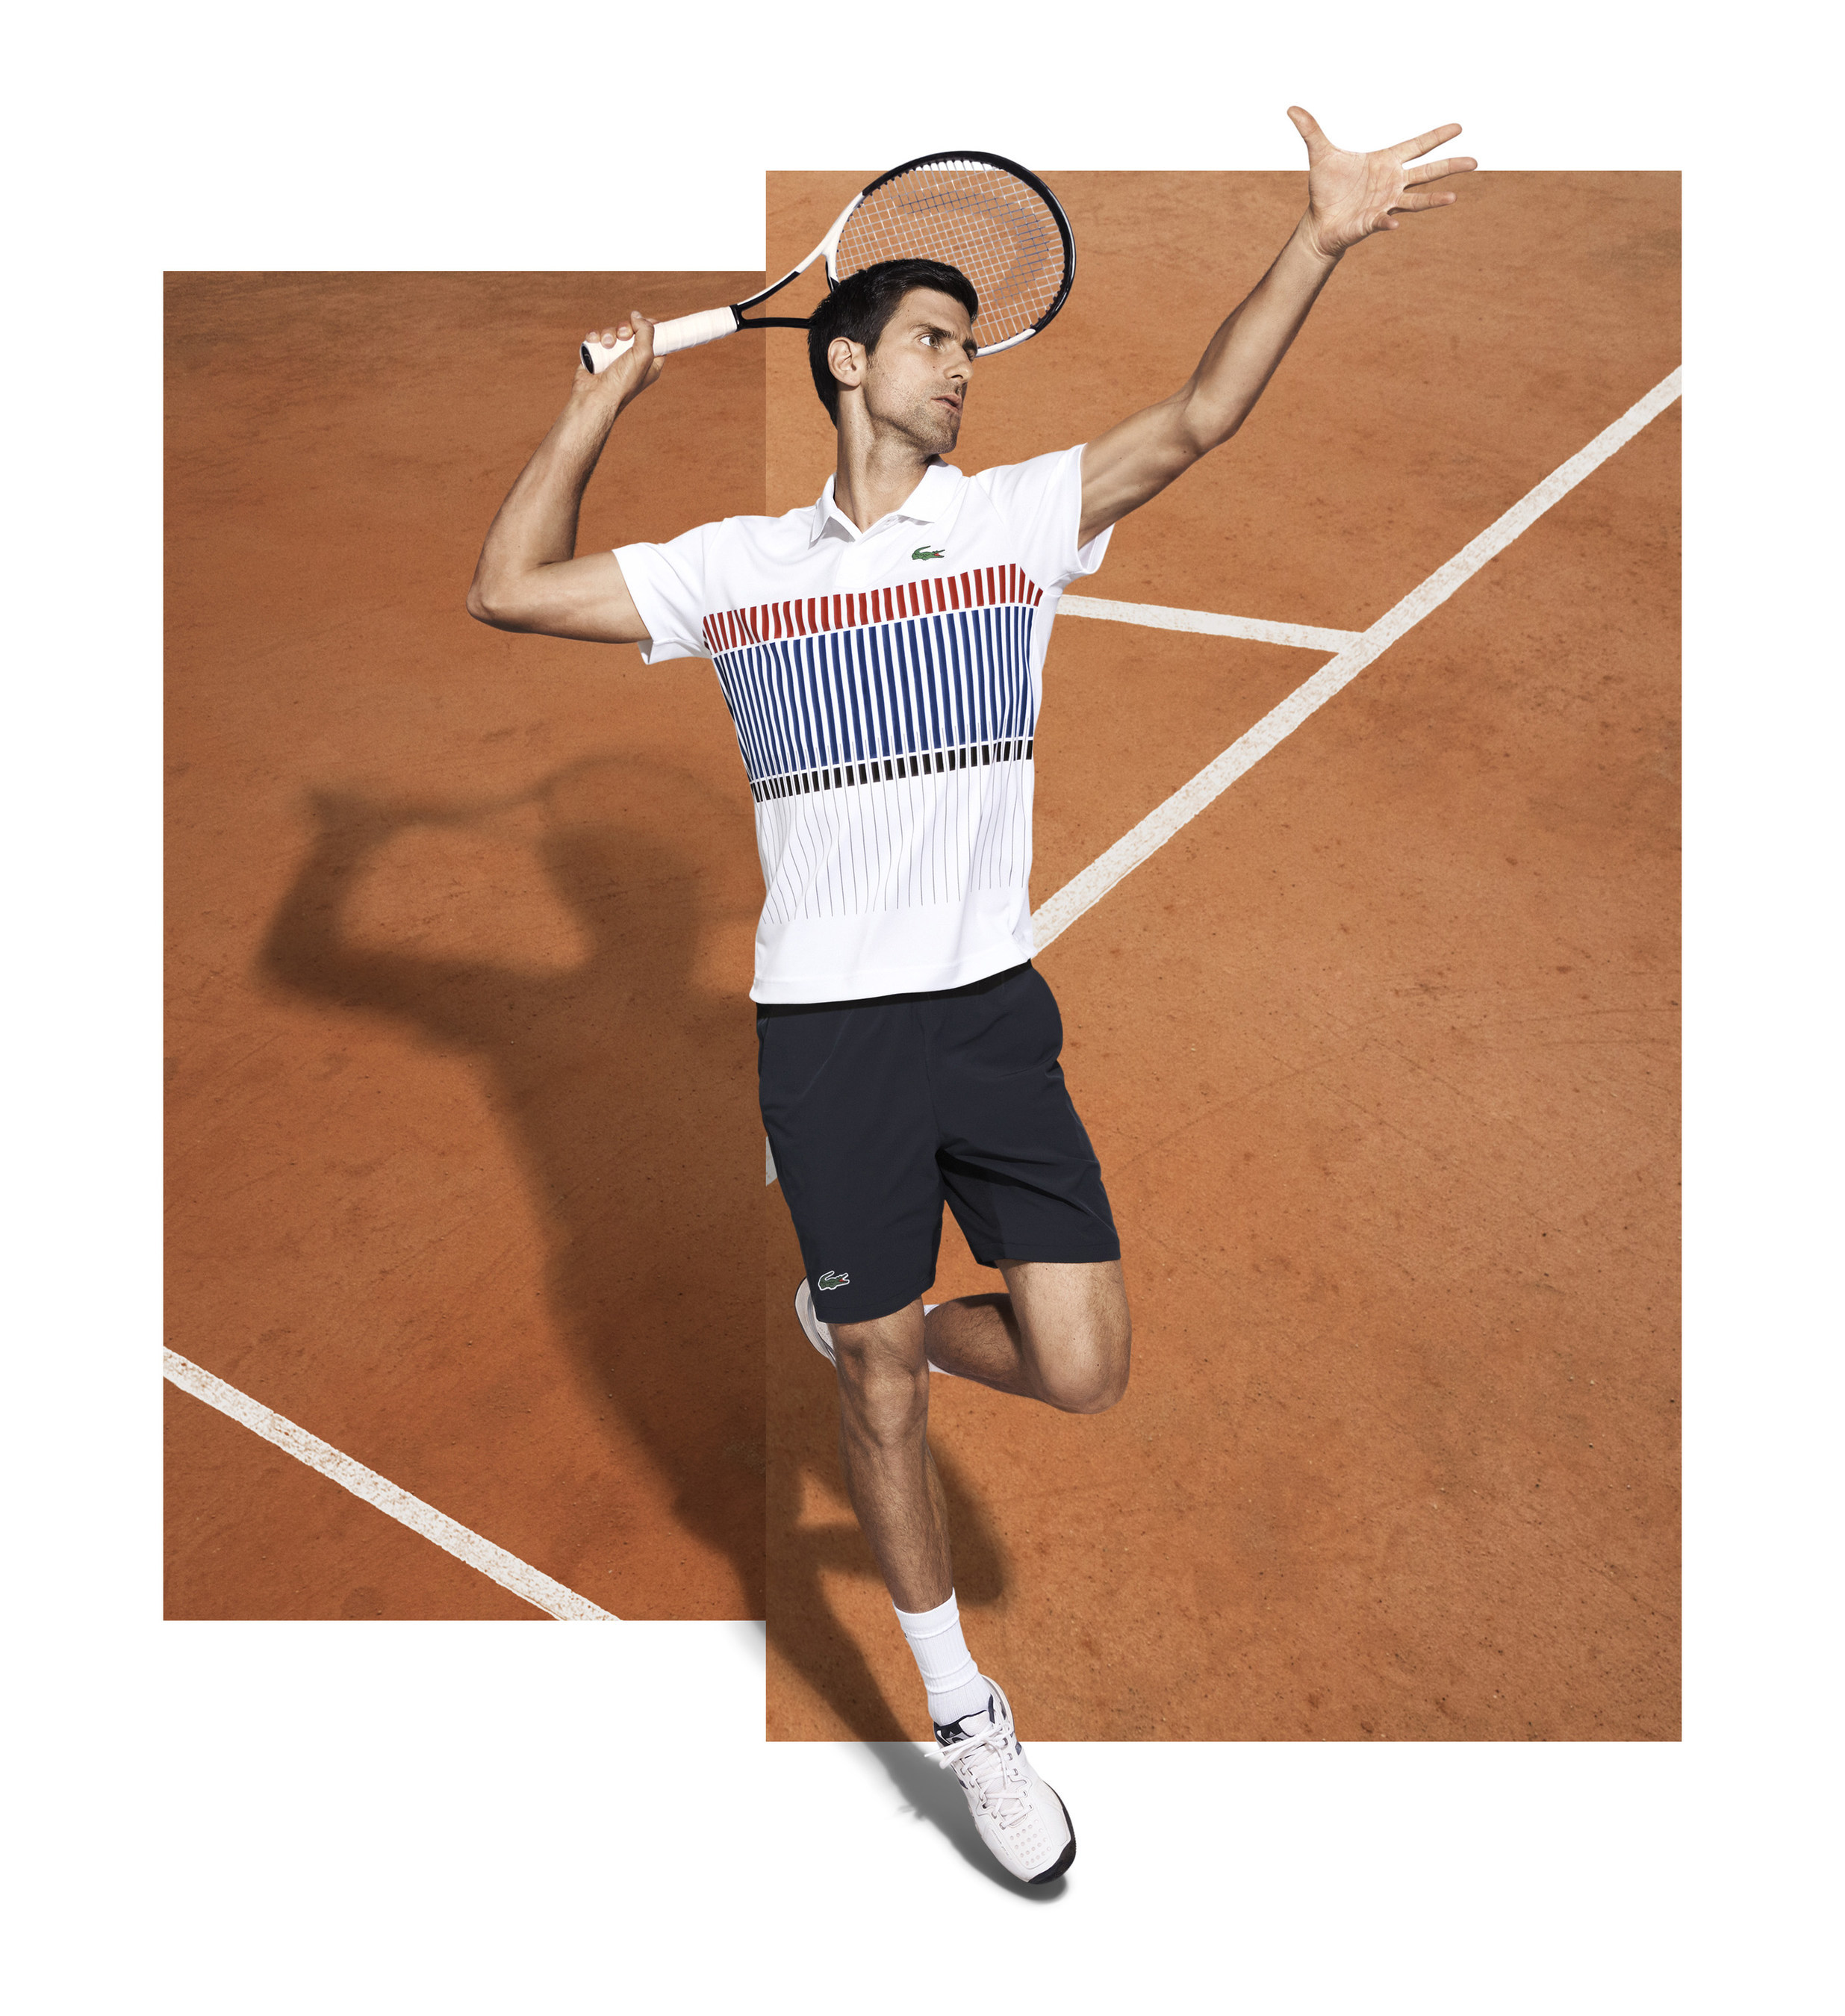 Lacoste New Ambassador Novak Djokovic